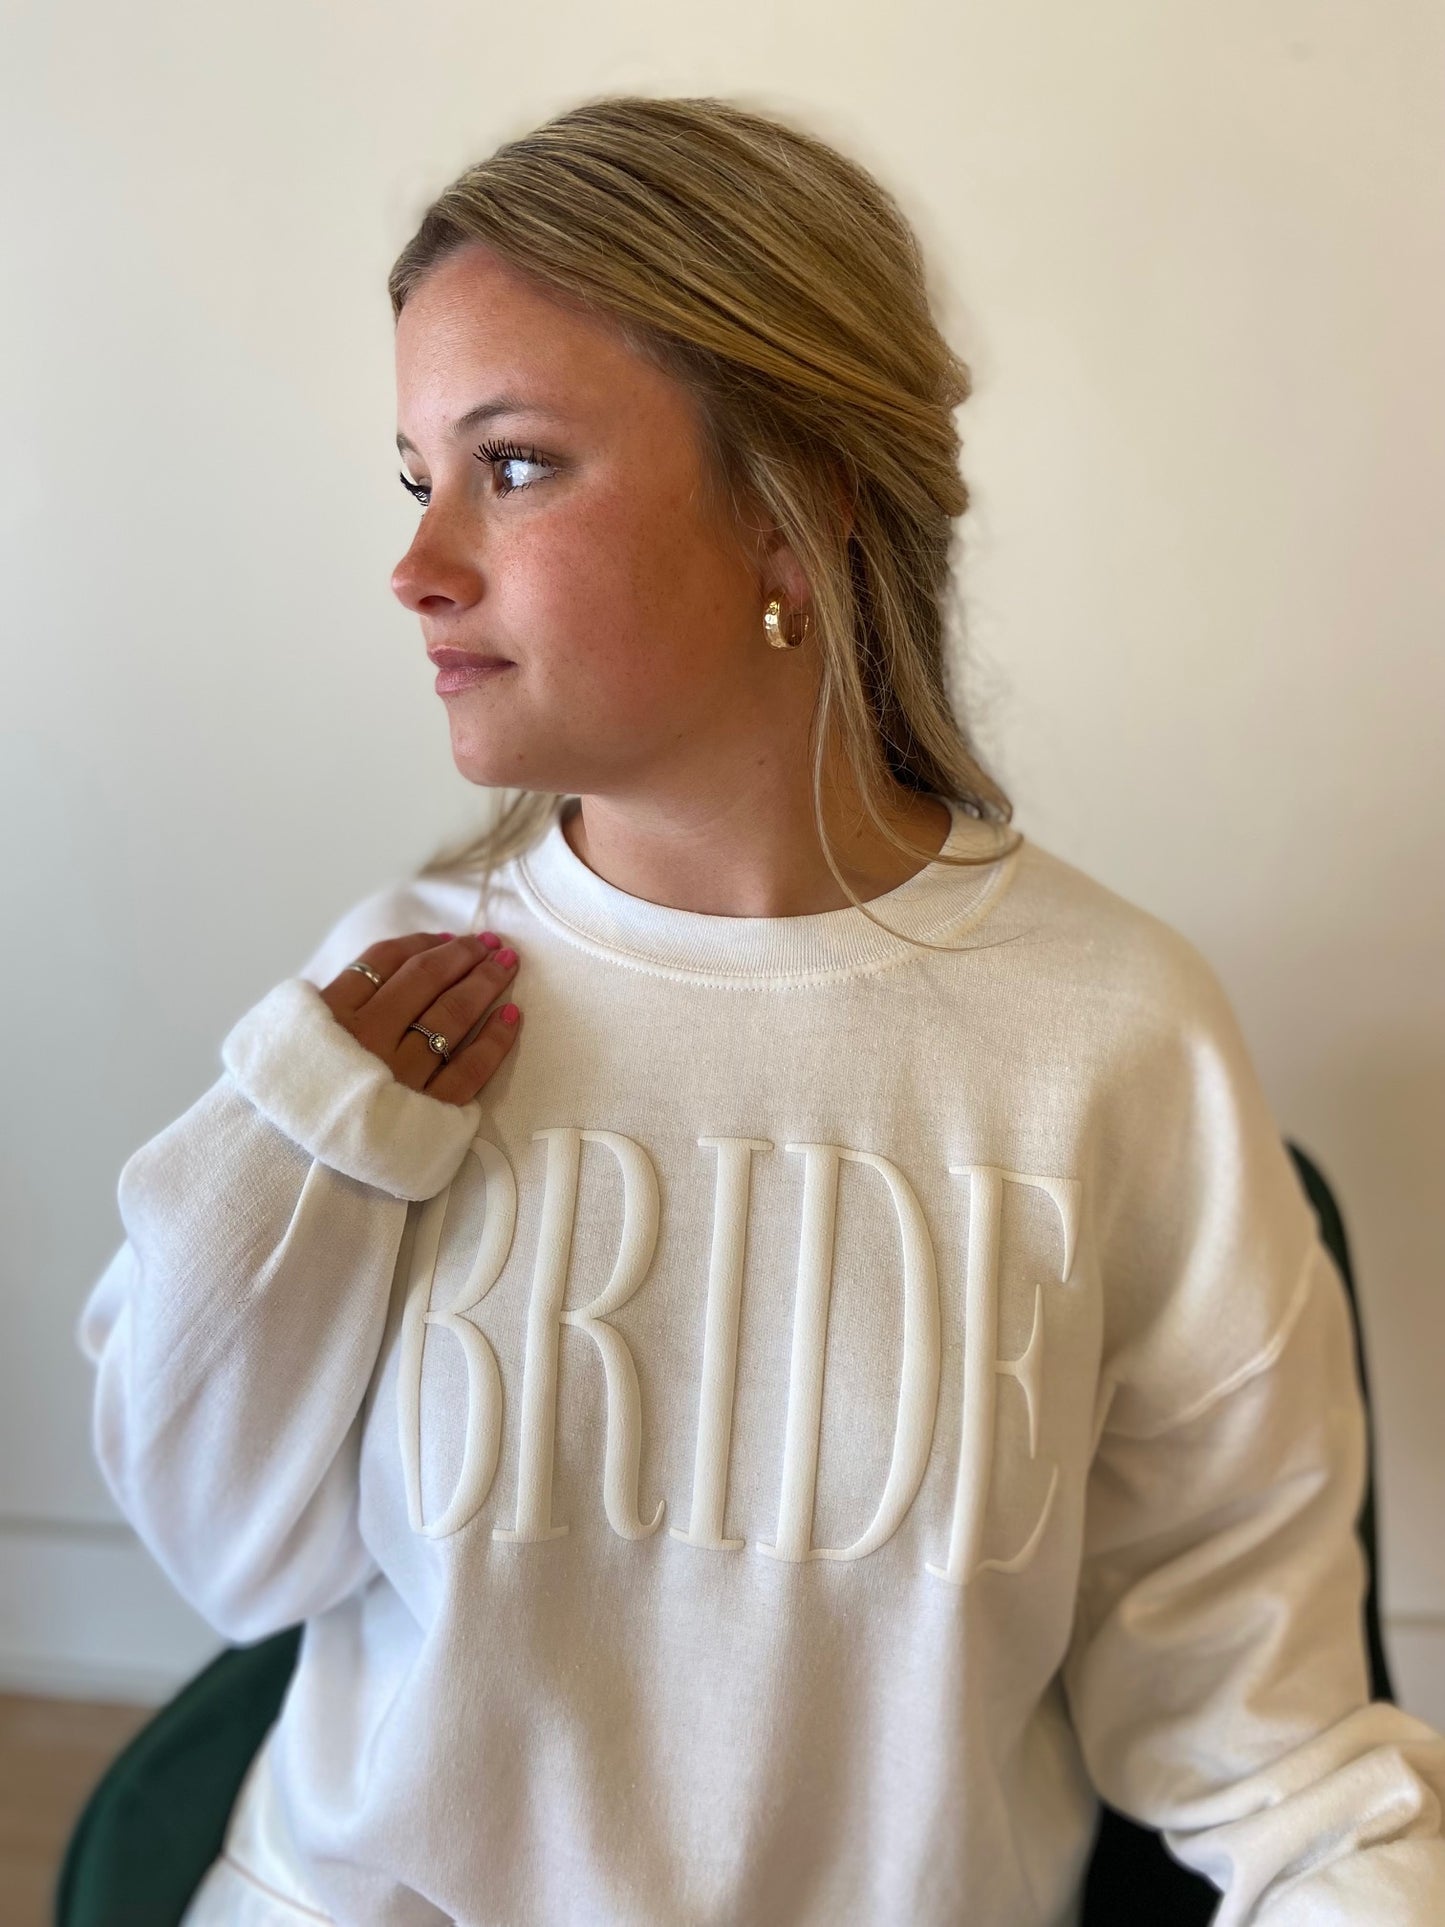 Bride Simple Puff Sweatshirt